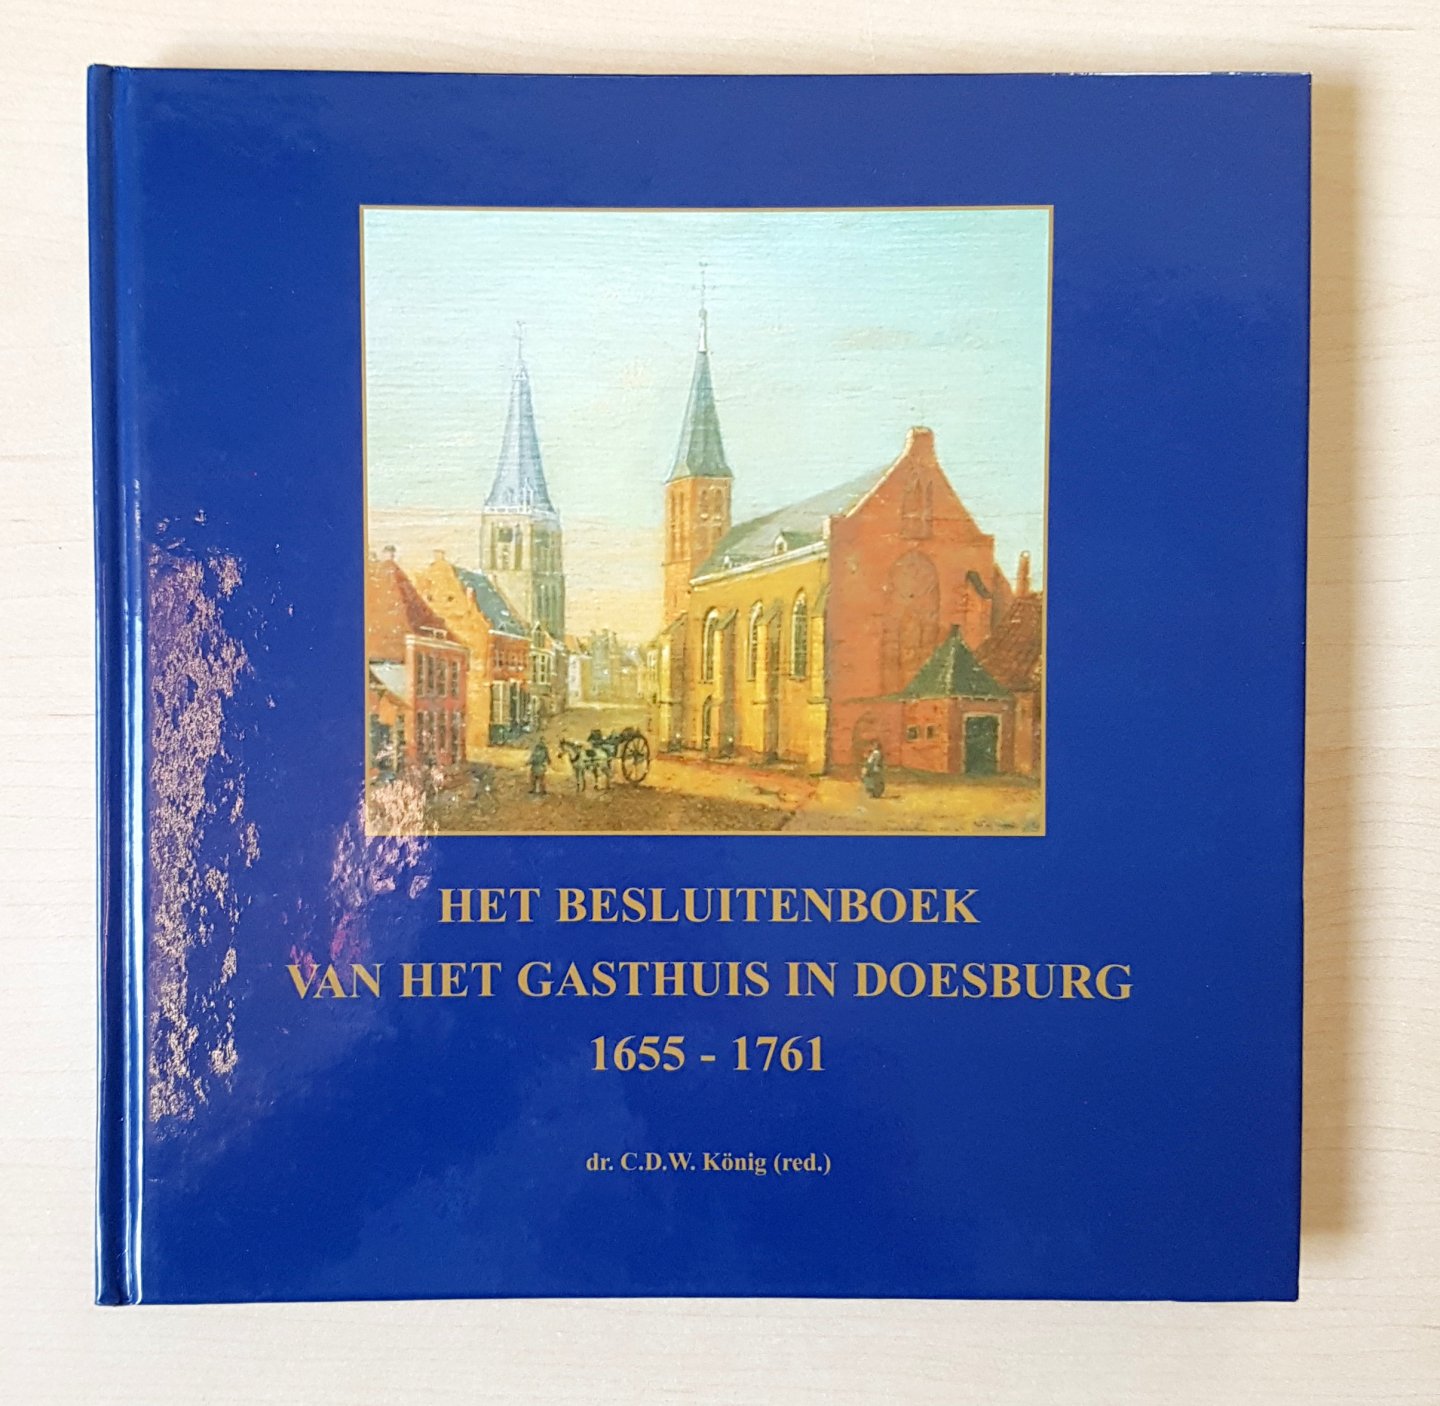 Dr. C.D.W. Koning (redactie) - Het besluitenboek van het gasthuis in Doesburg 1655 - 1761 - Inclusief cd